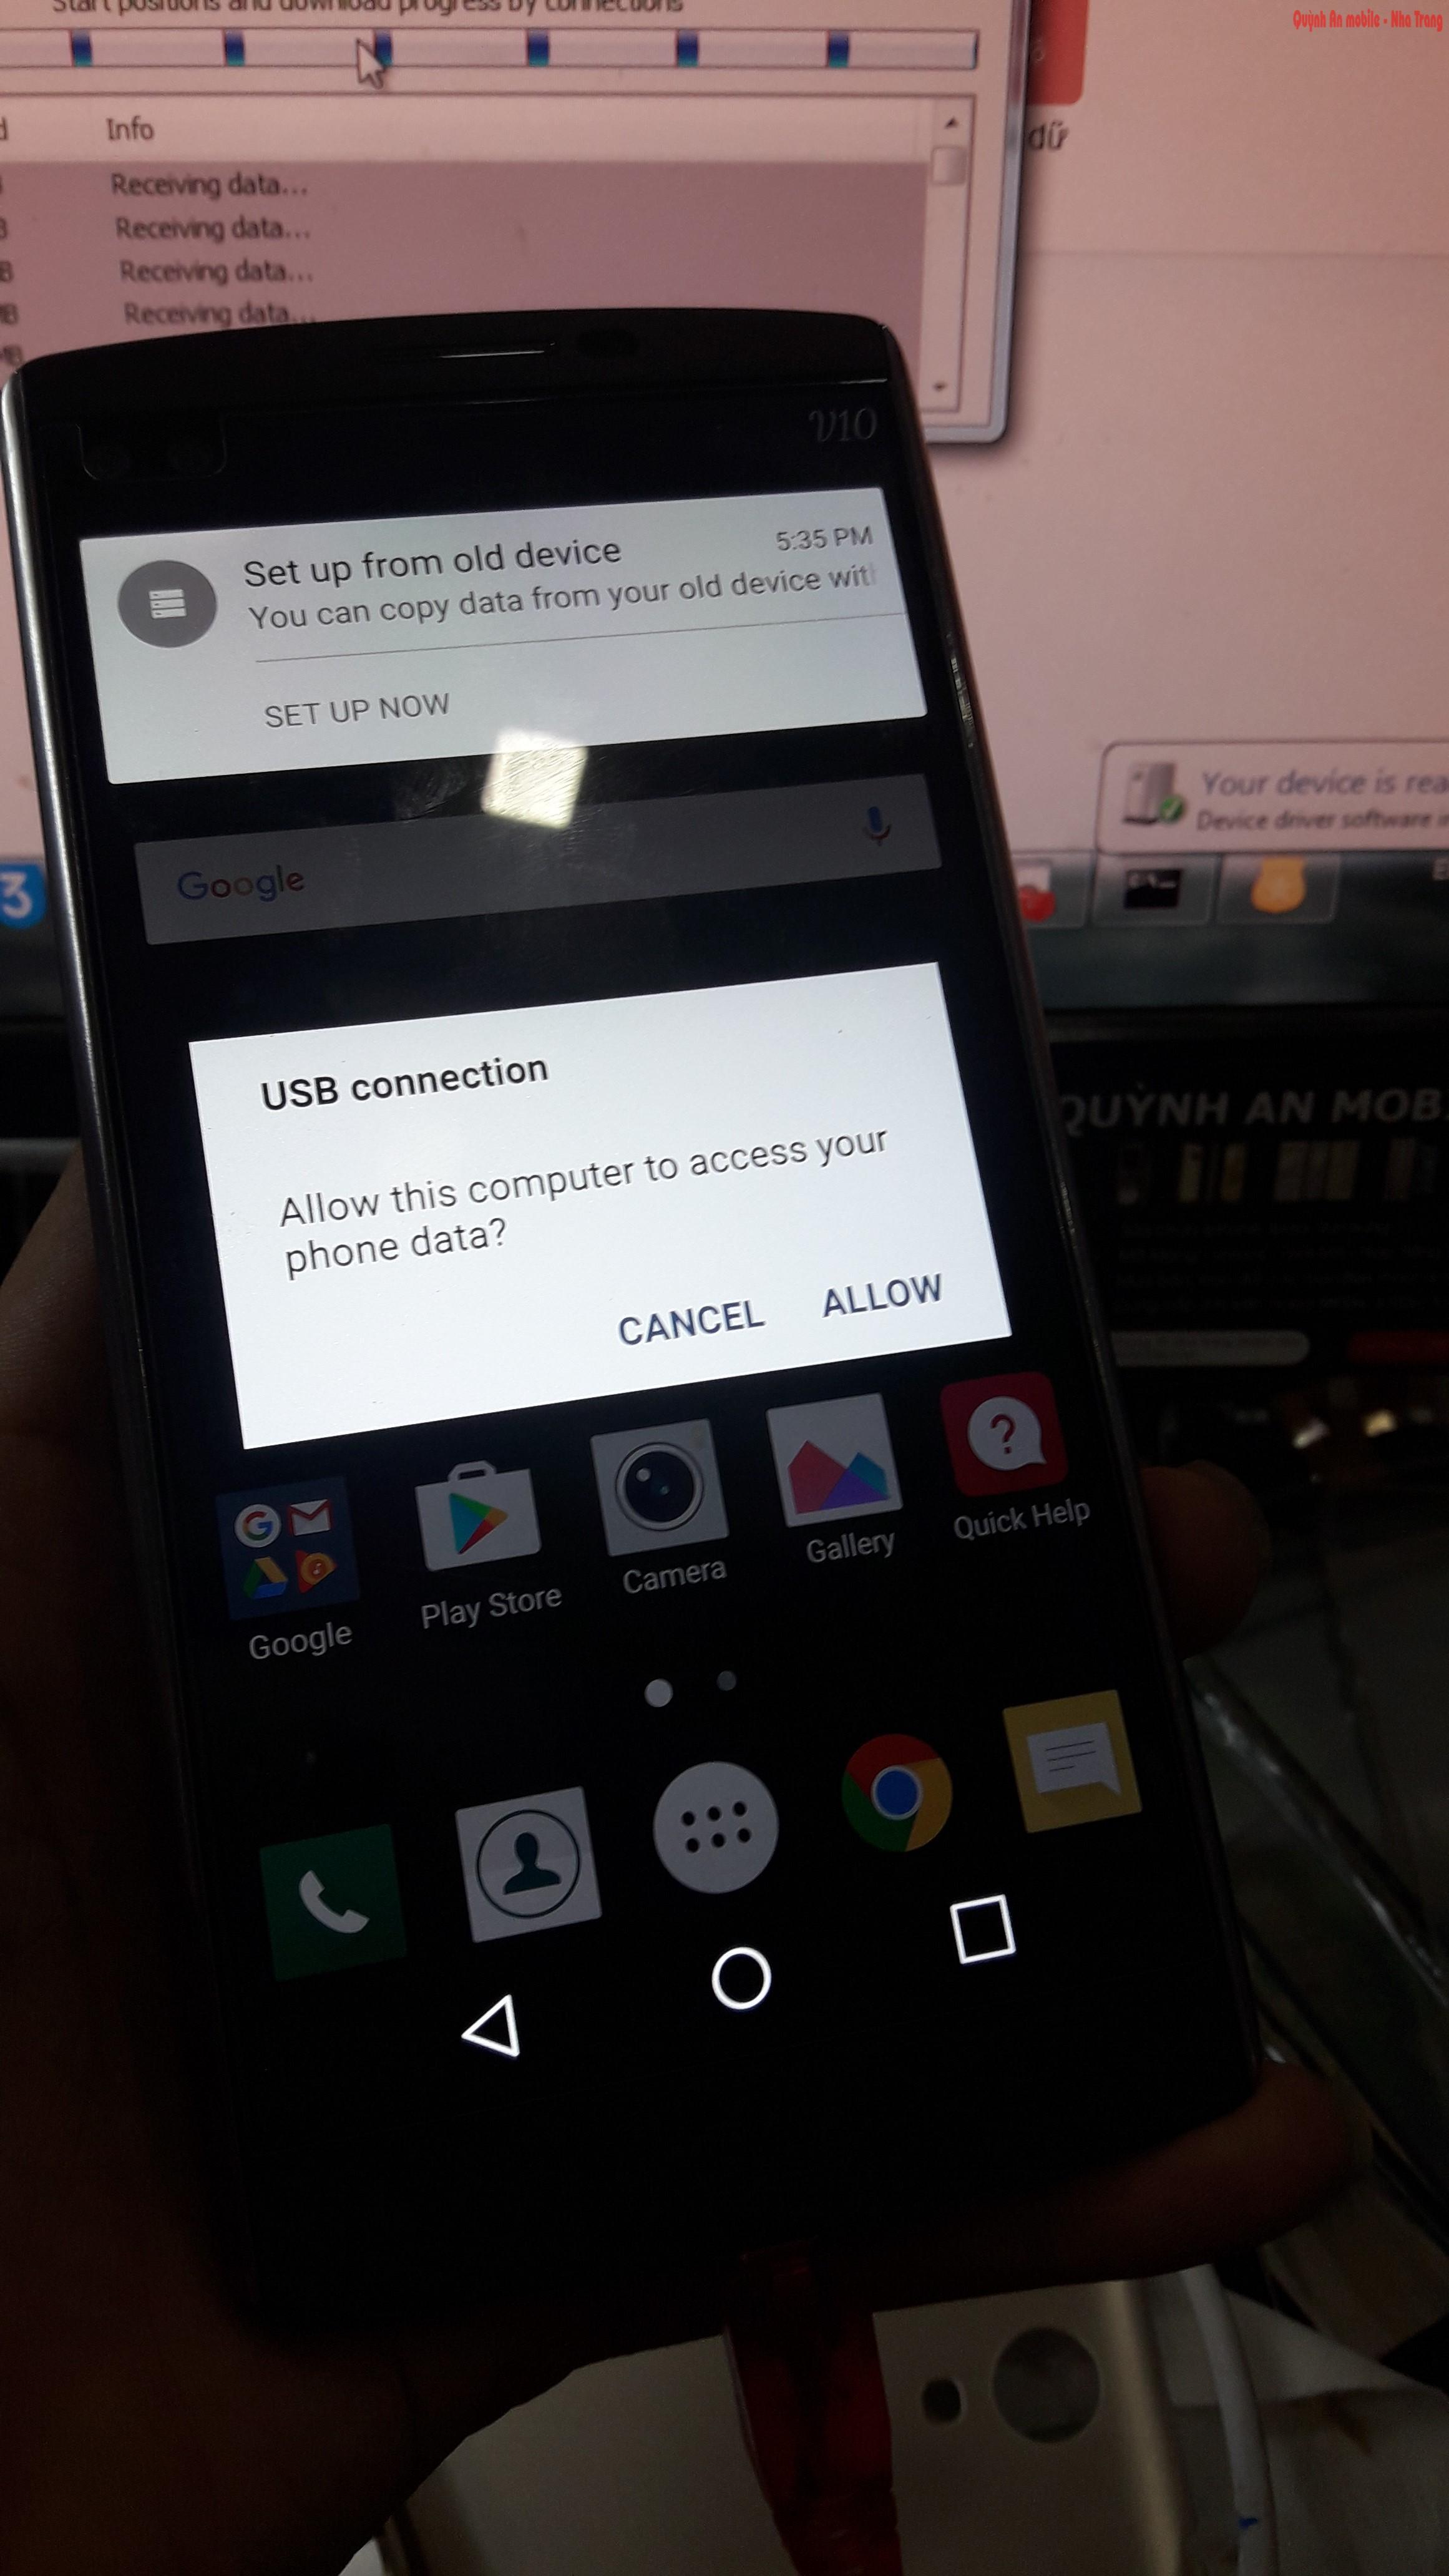 Xóa tài khoản Google cho LG V10 tại Nha Trang bằng thiết bị chuyên dụng, chờ lấy ngay.